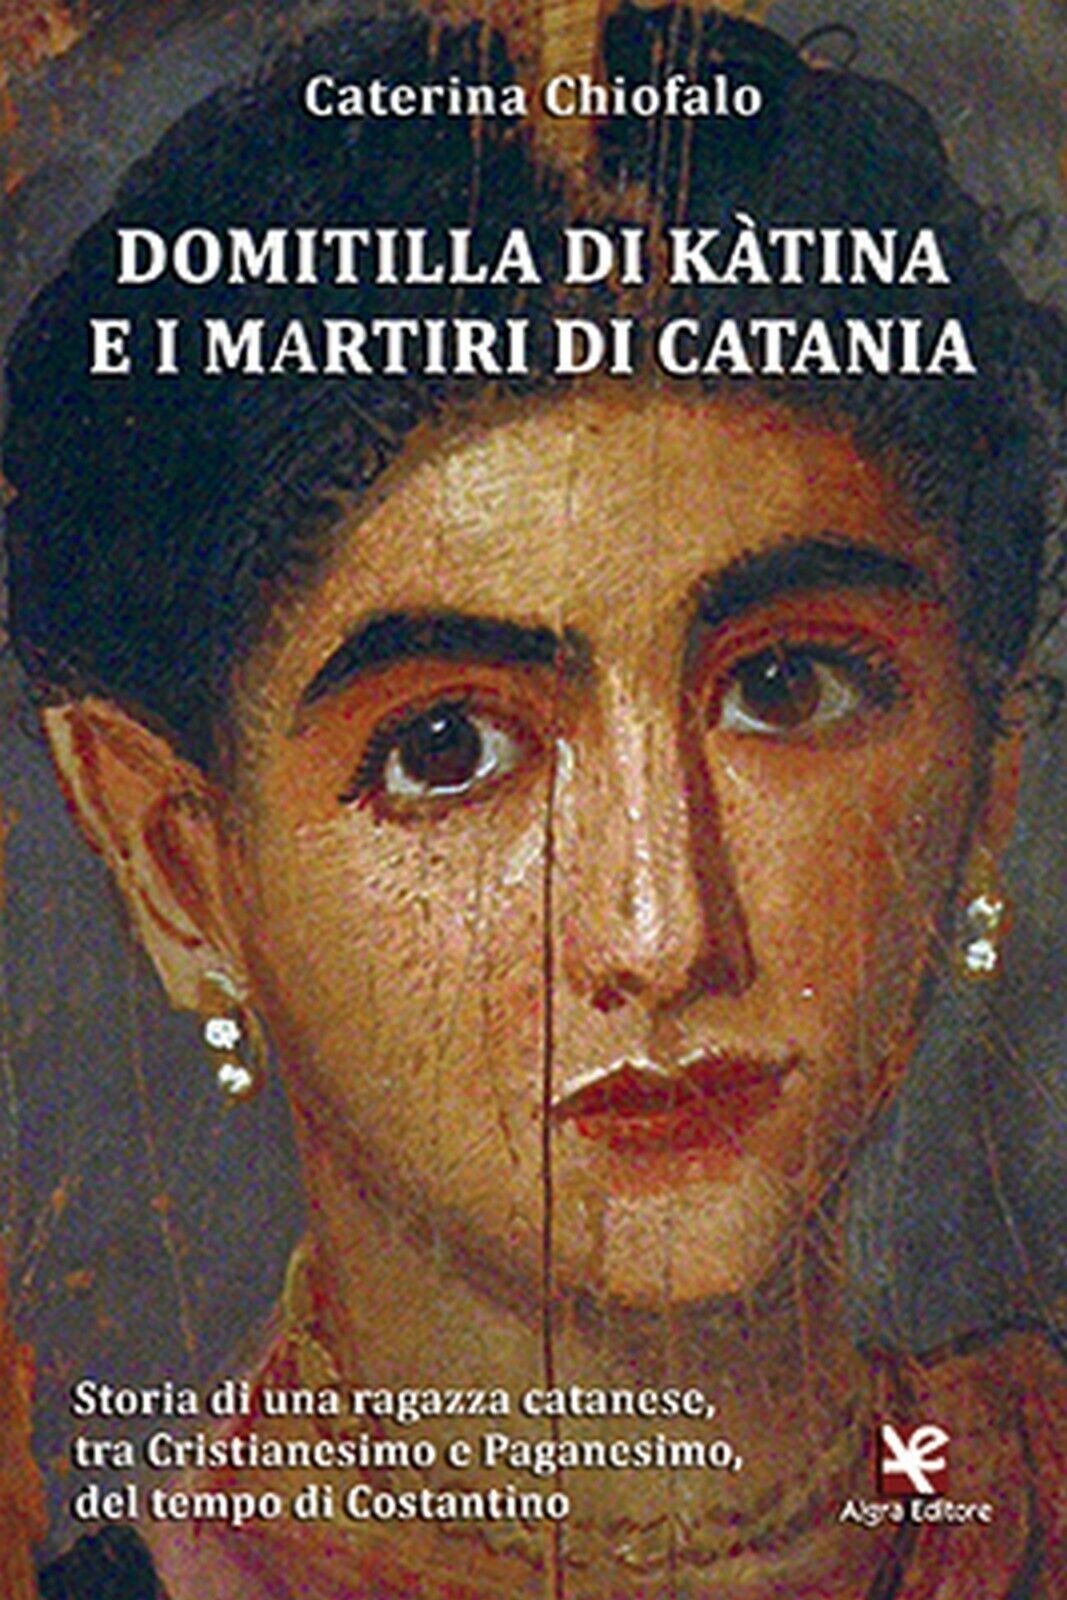 Domitilla di K?tina e i martiri di Catania  di Caterina Chiofalo,  Algra Editore